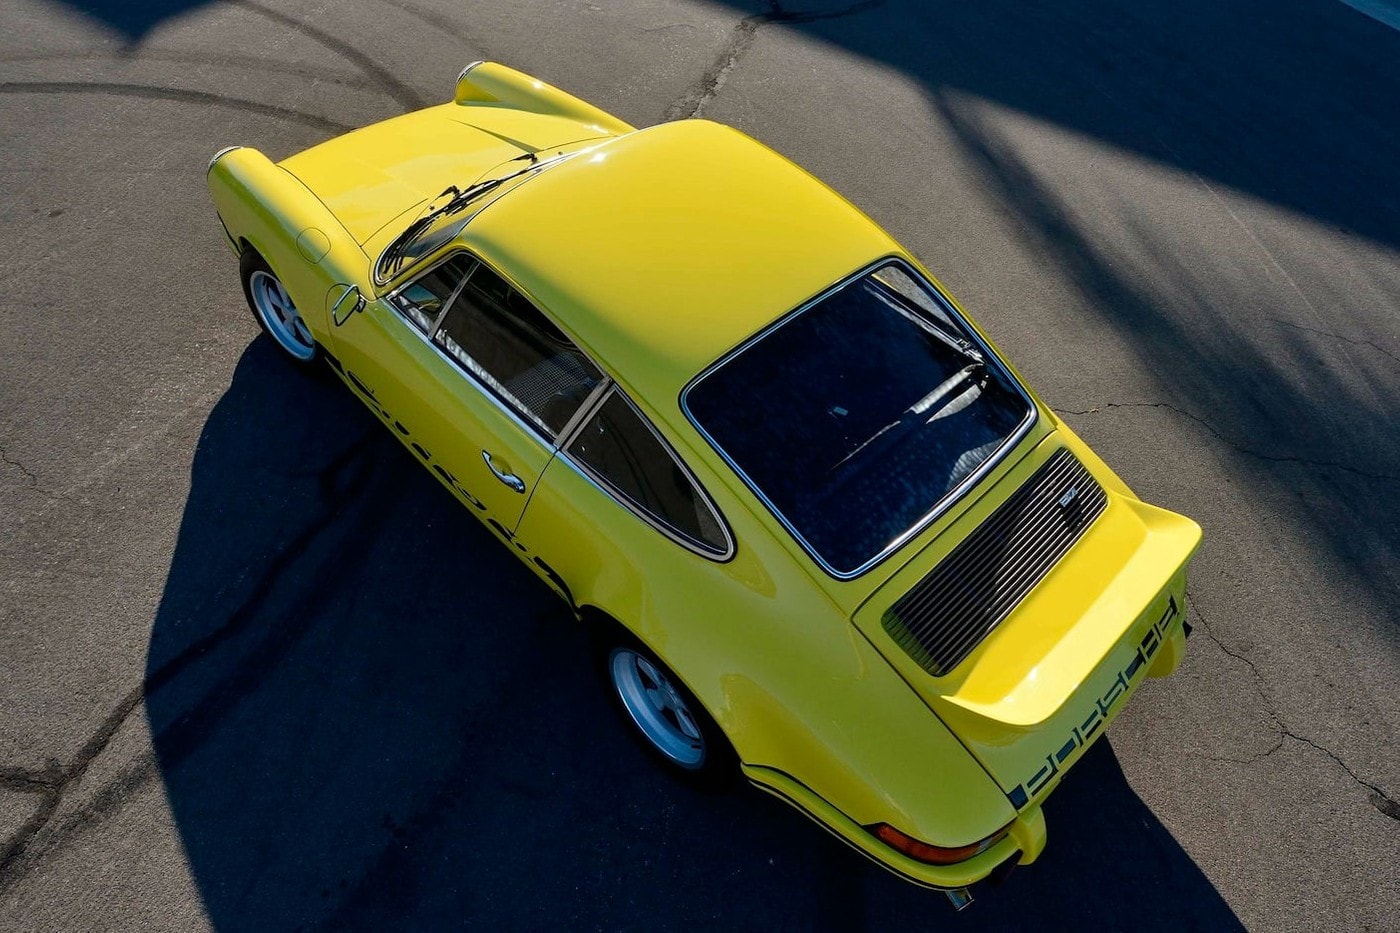 Paul Walker 經典坐駕 1973 Porsche 911 Carrera RS 2.7 即將展開拍賣